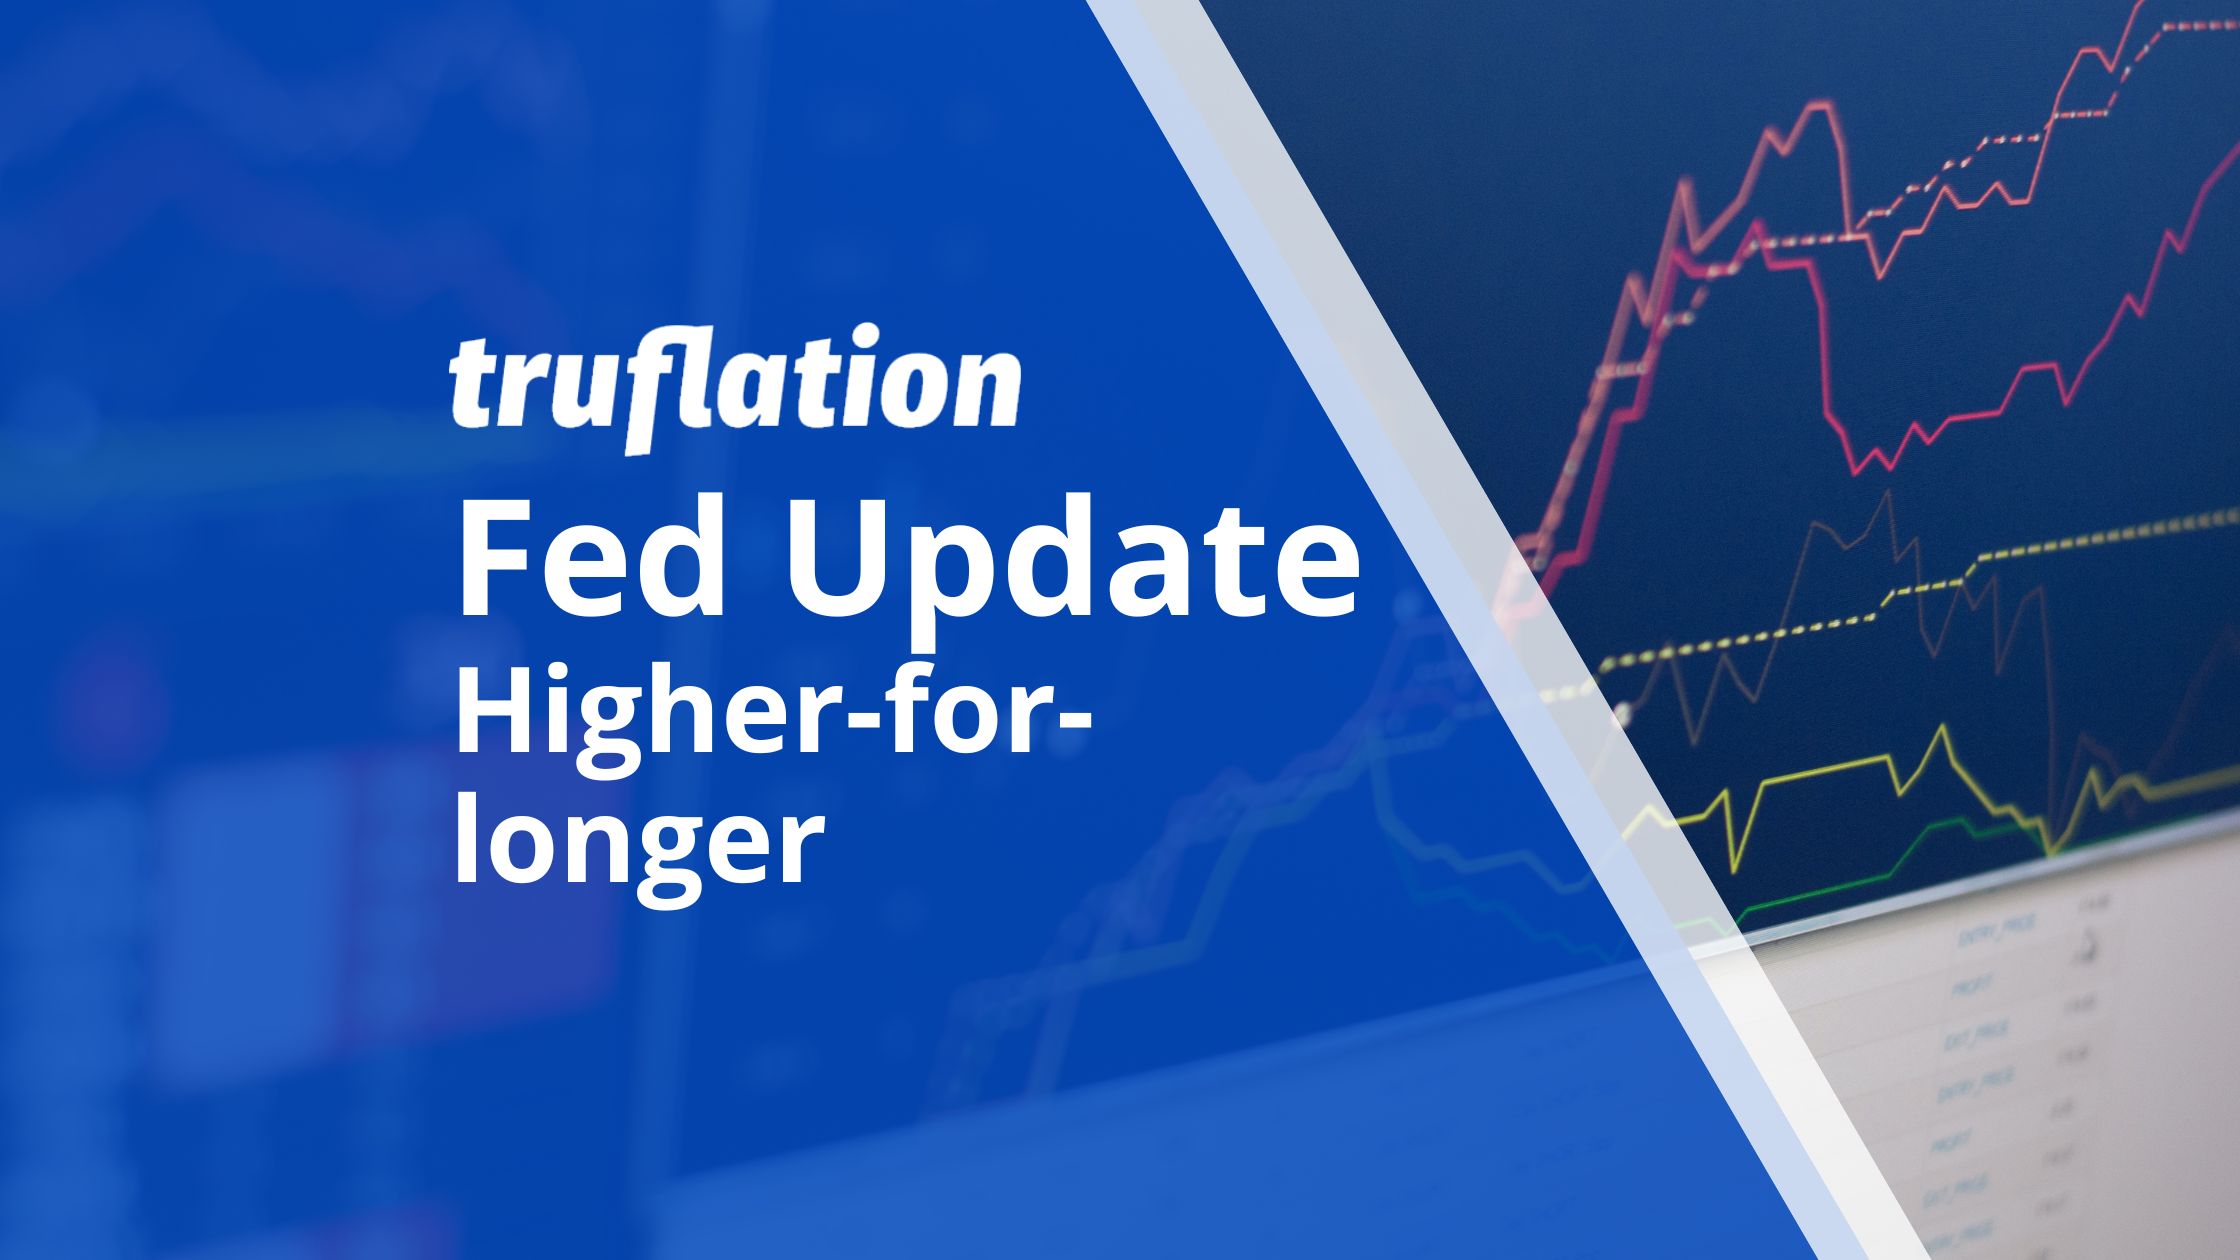 Truflation Fed Update: Higher-for-longer